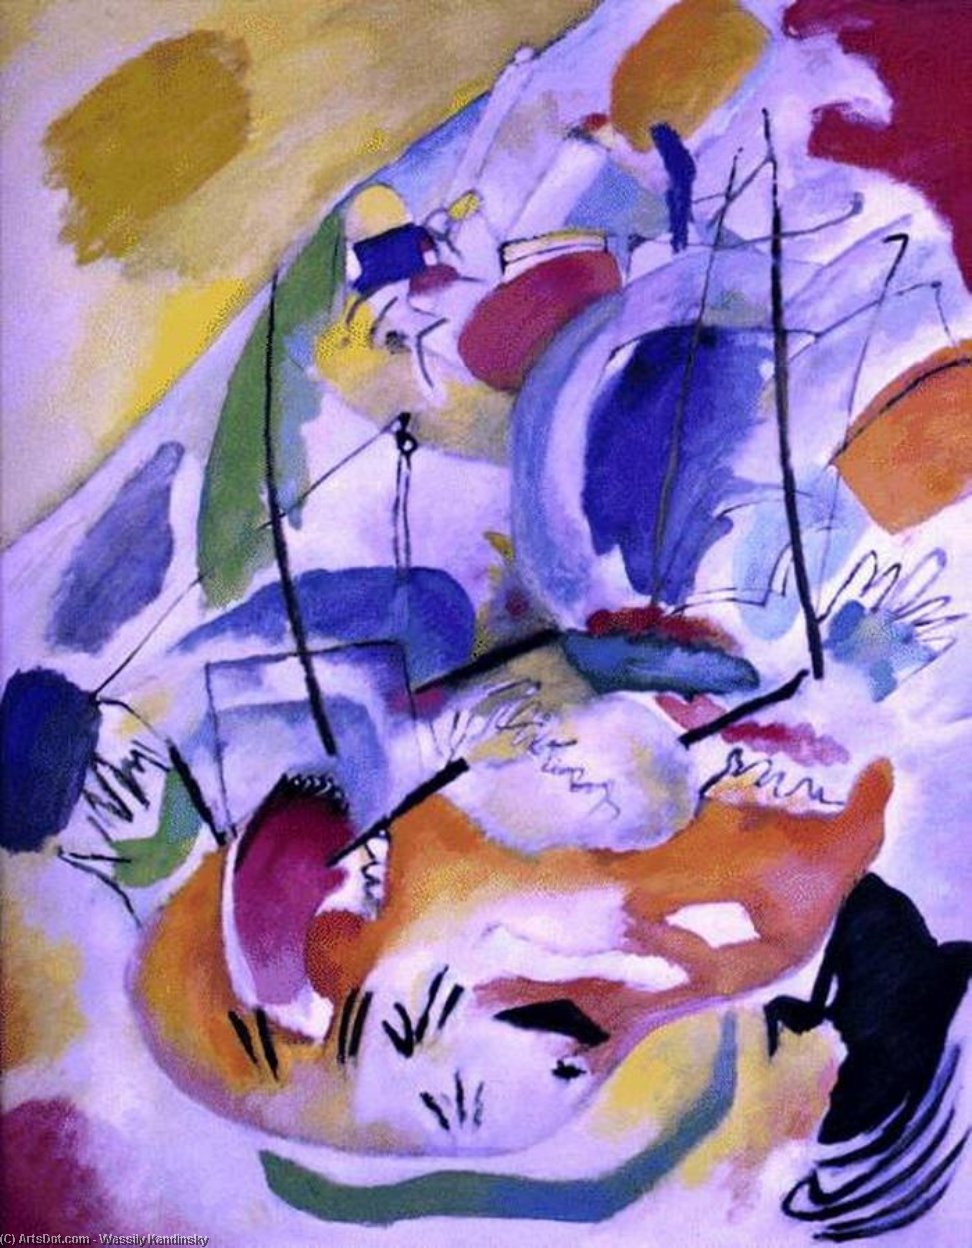 WikiOO.org - אנציקלופדיה לאמנויות יפות - ציור, יצירות אמנות Wassily Kandinsky - Improvisation 31 (Sea Battle)